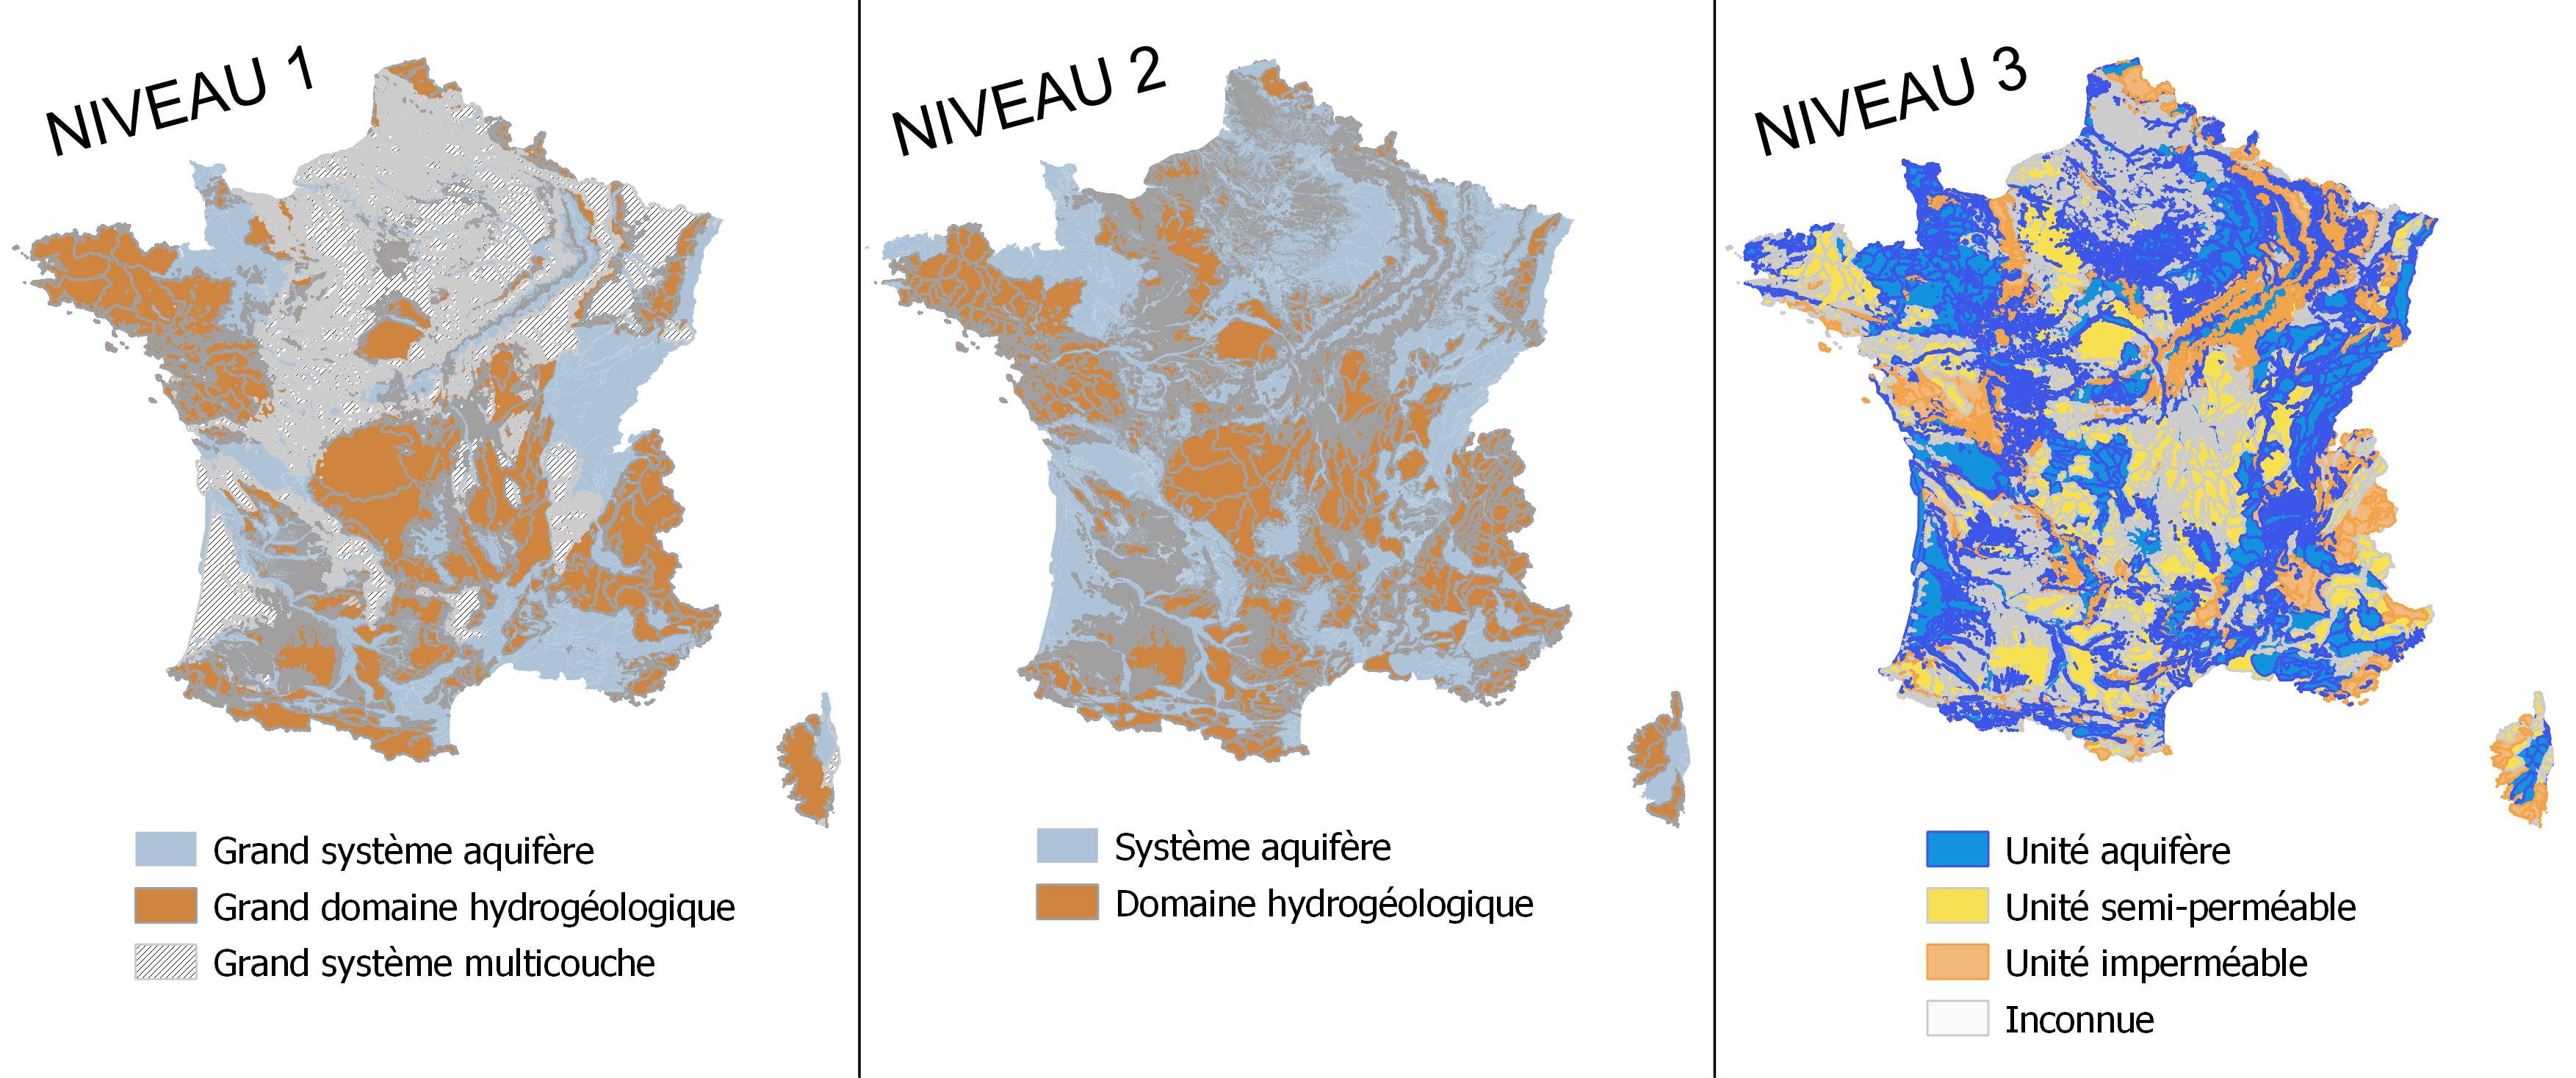 Trois cartes nationales des entités hydrogéologiques de la BDLISA V3, selon les niveaux de représentation